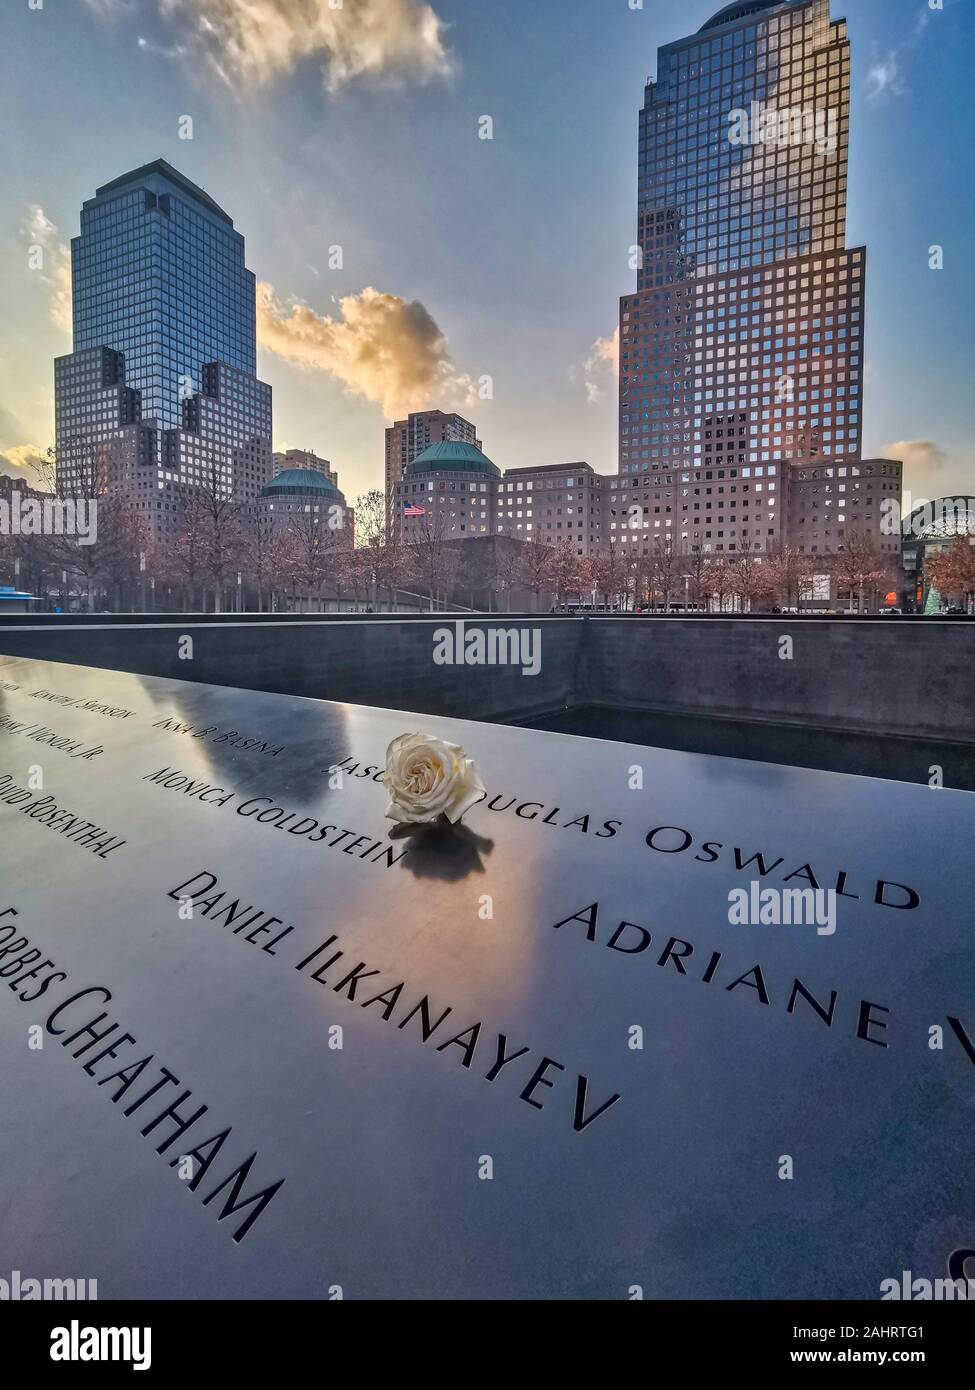 New York , USA-dicembre 14,2019: 9/11 memorial con fiore bianco in primo piano e grattacieli in background Foto Stock